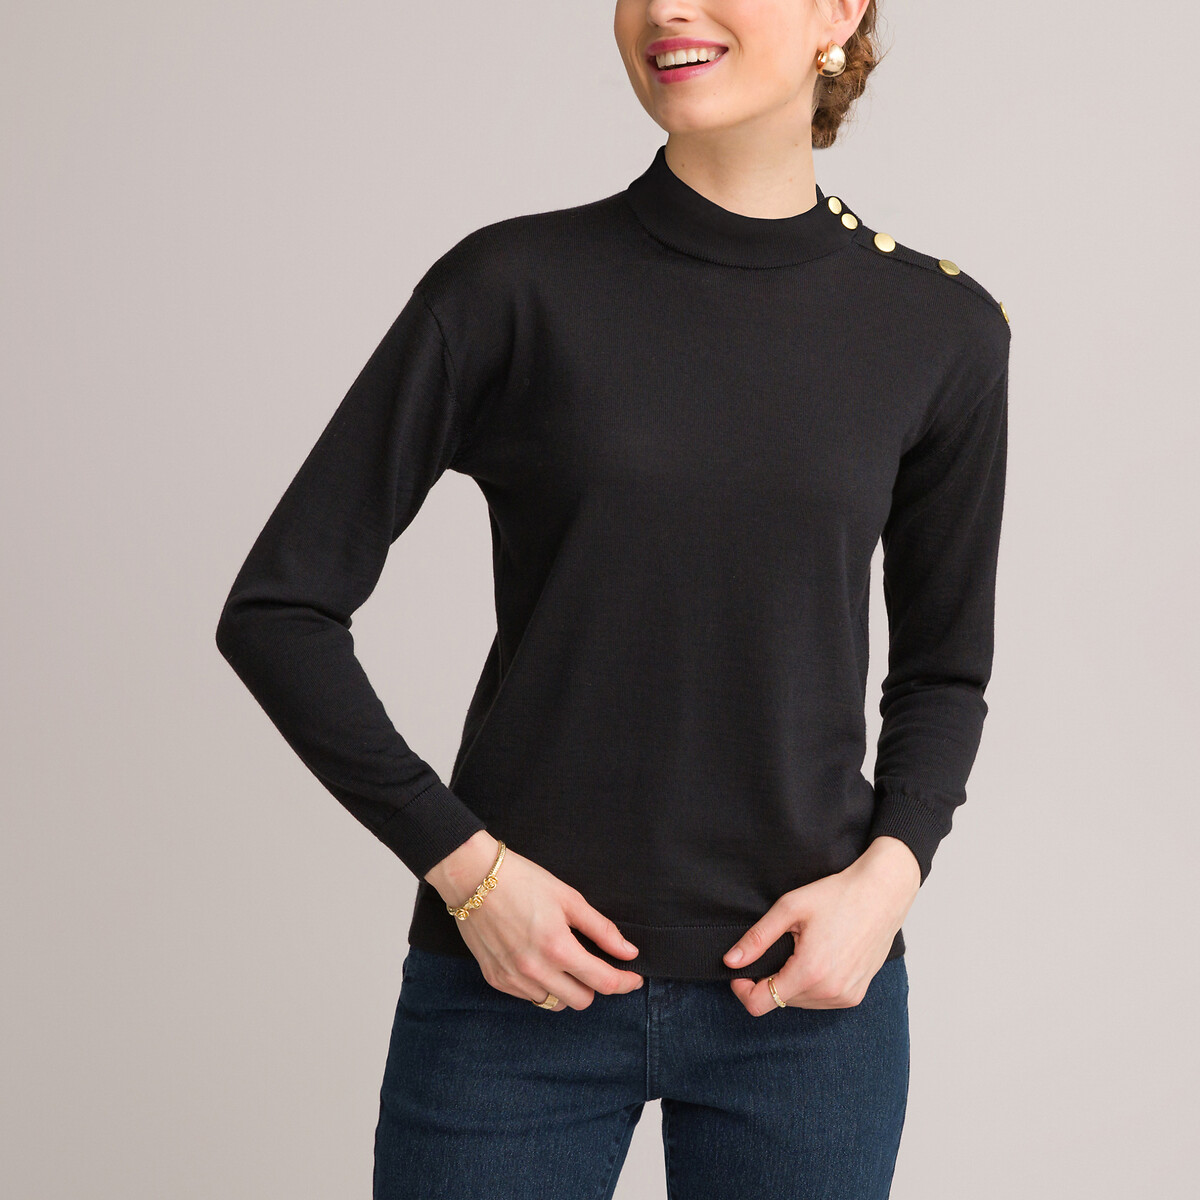 Пуловер с воротником-стойкой тонкий трикотаж смешанная шерсть 50/52 (FR) - 56/58 (RUS) черный